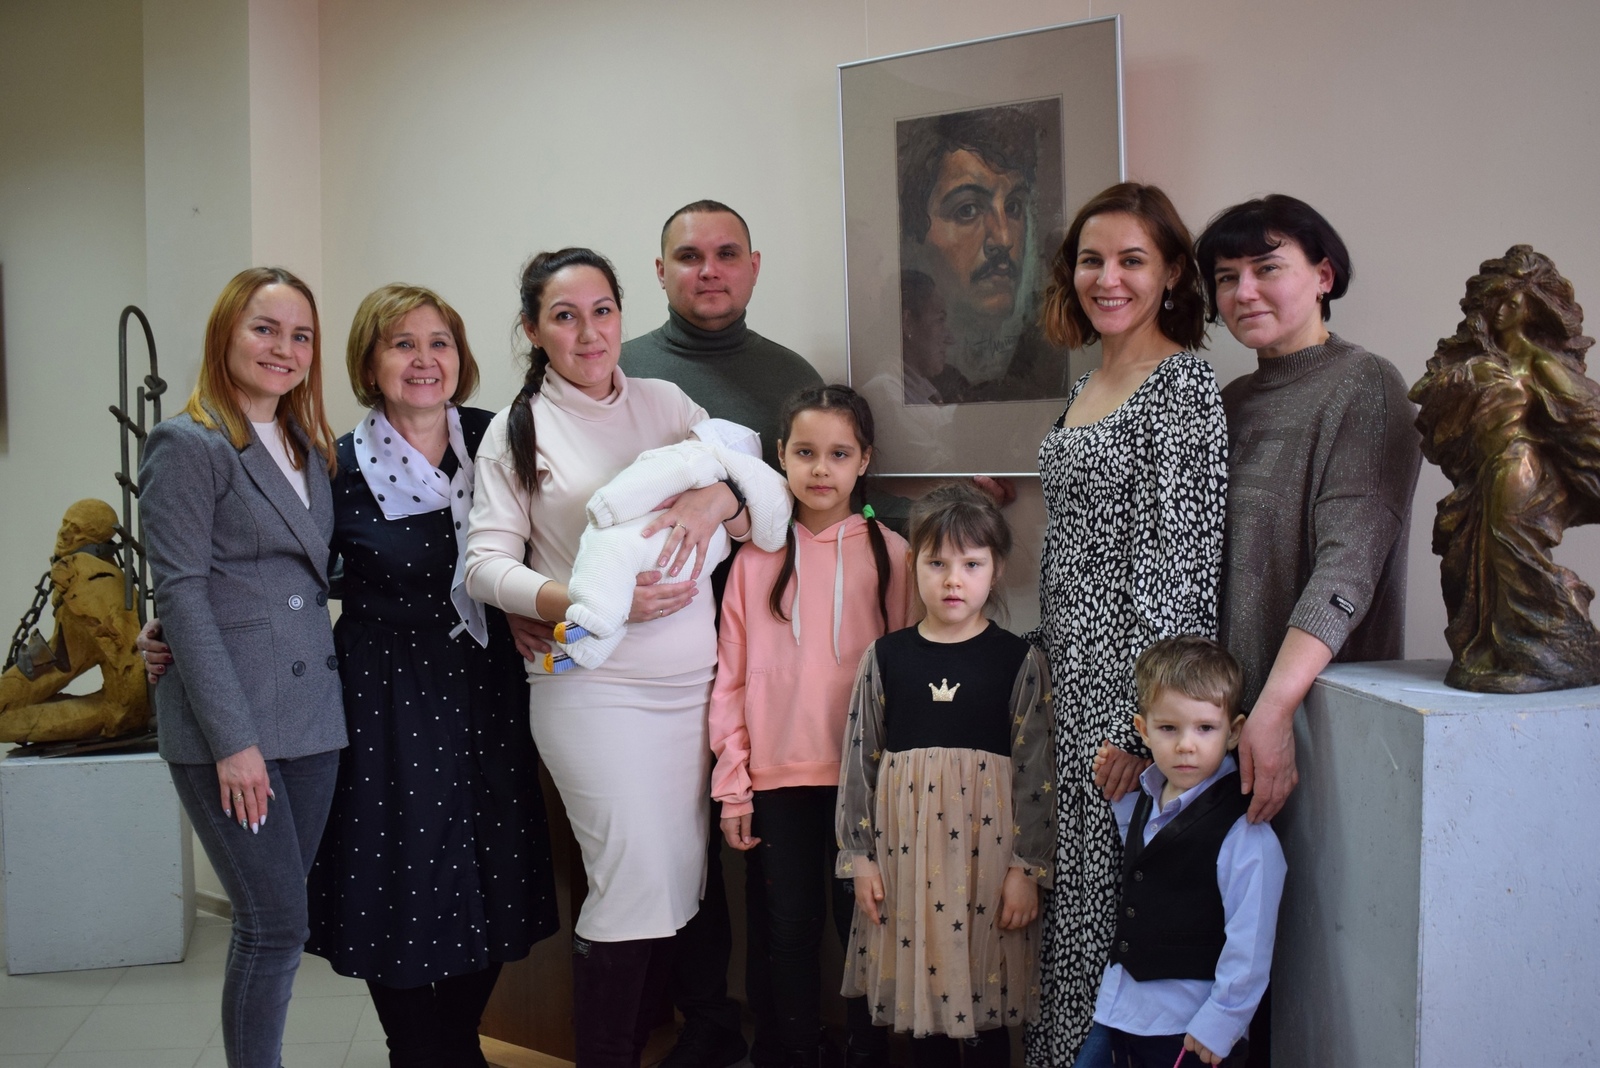 В музее открылась персональная выставка скульптора Ильшата Гилязова, которая собрала его родных, друзей и близких. Фото: Гузель Габбасова.